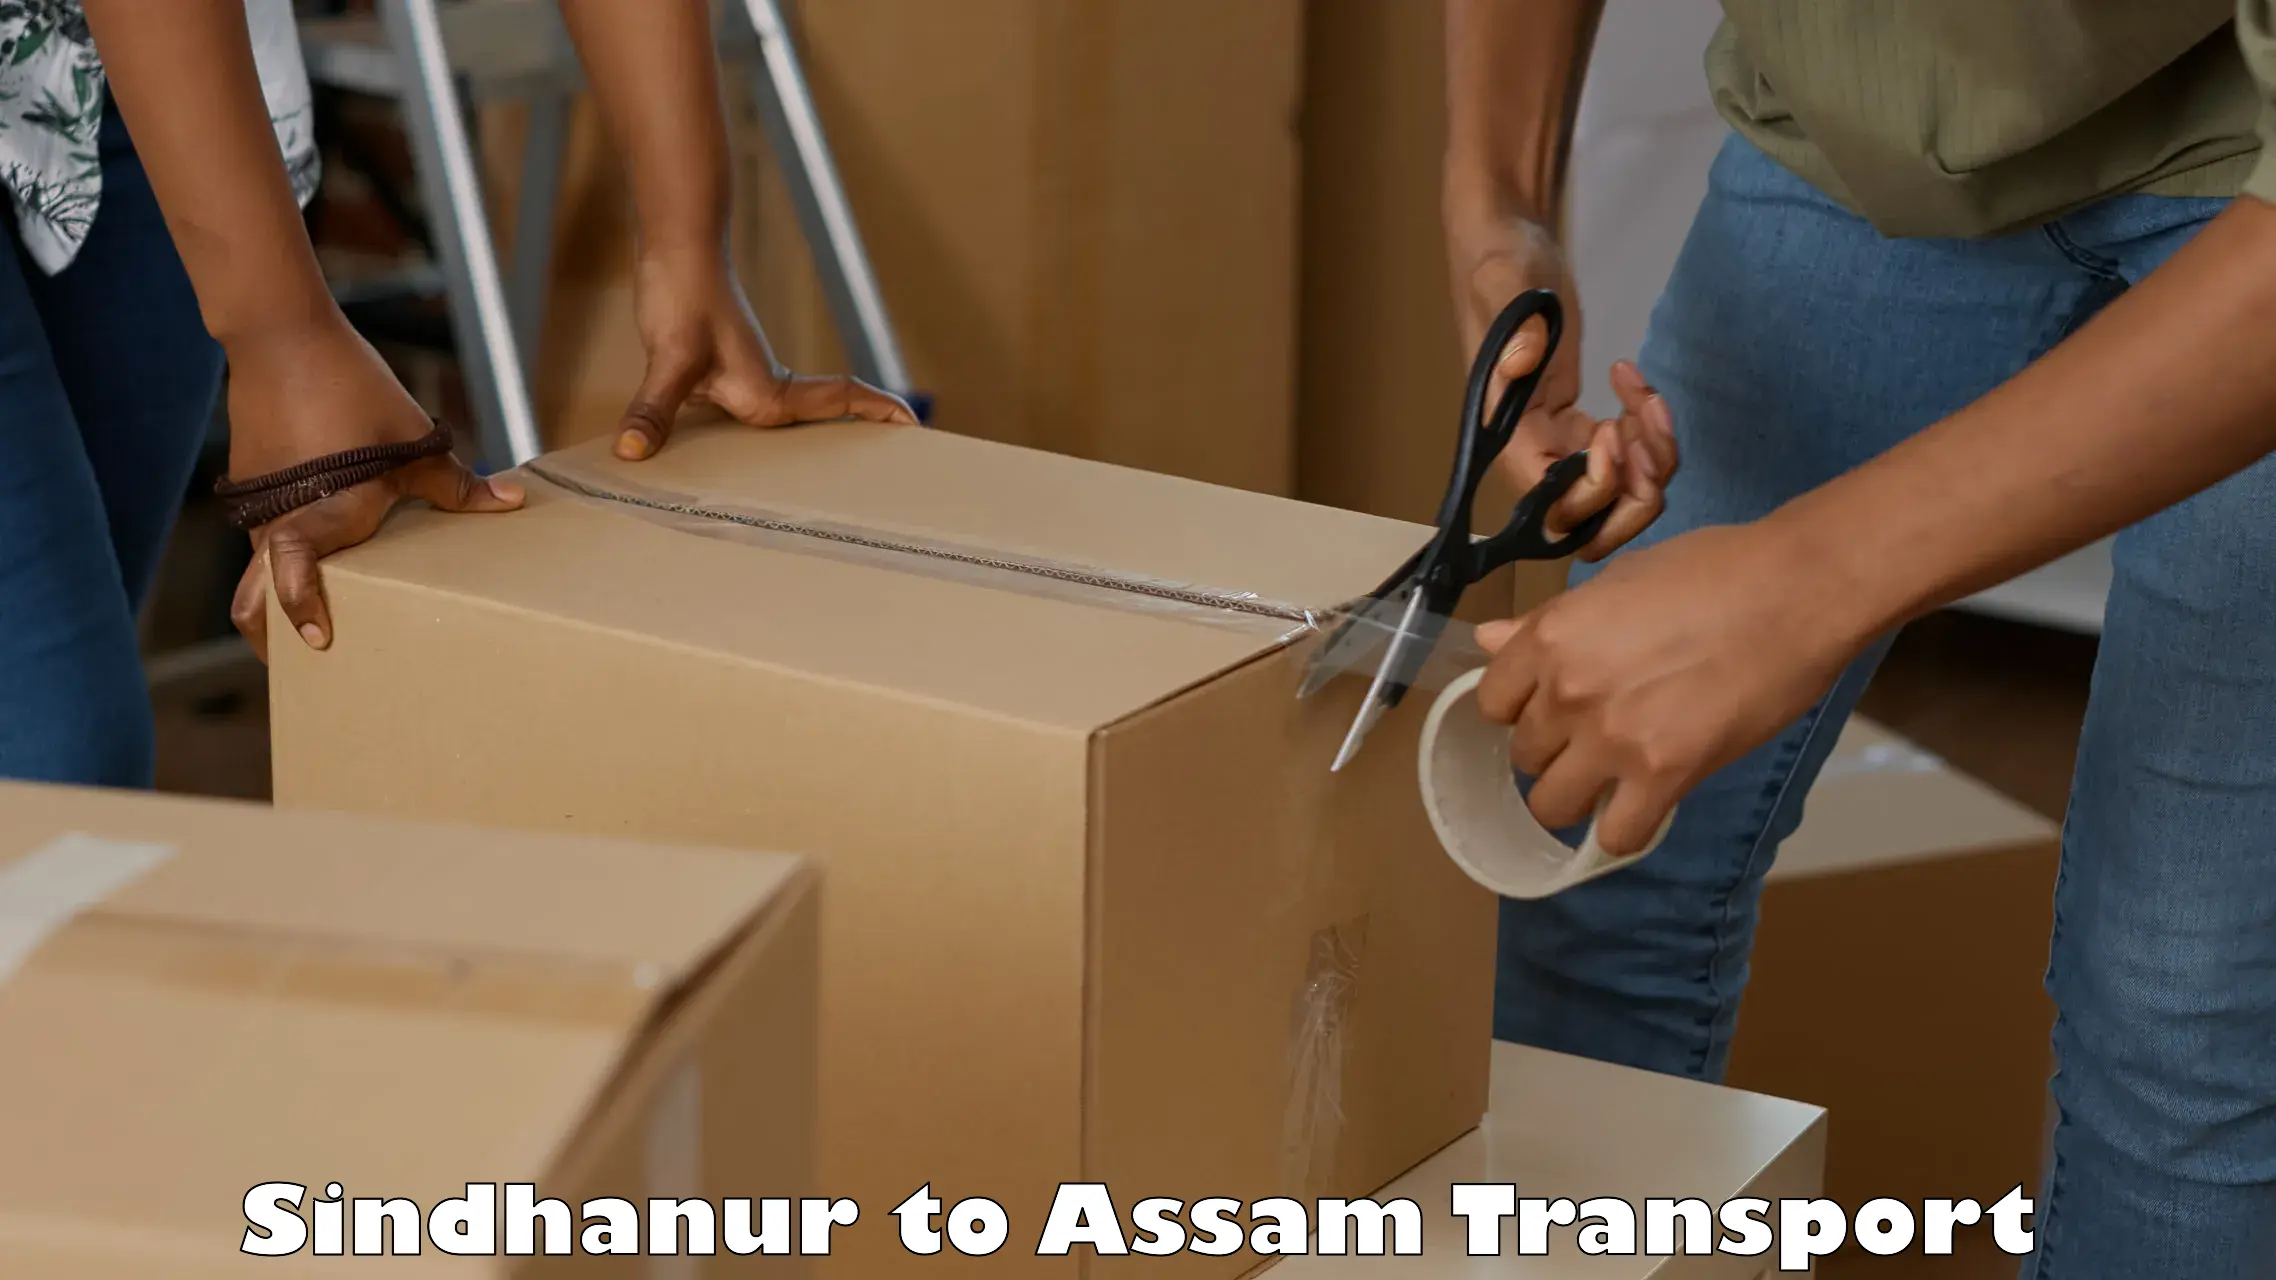 Pick up transport service in Sindhanur to Bamunimaidan